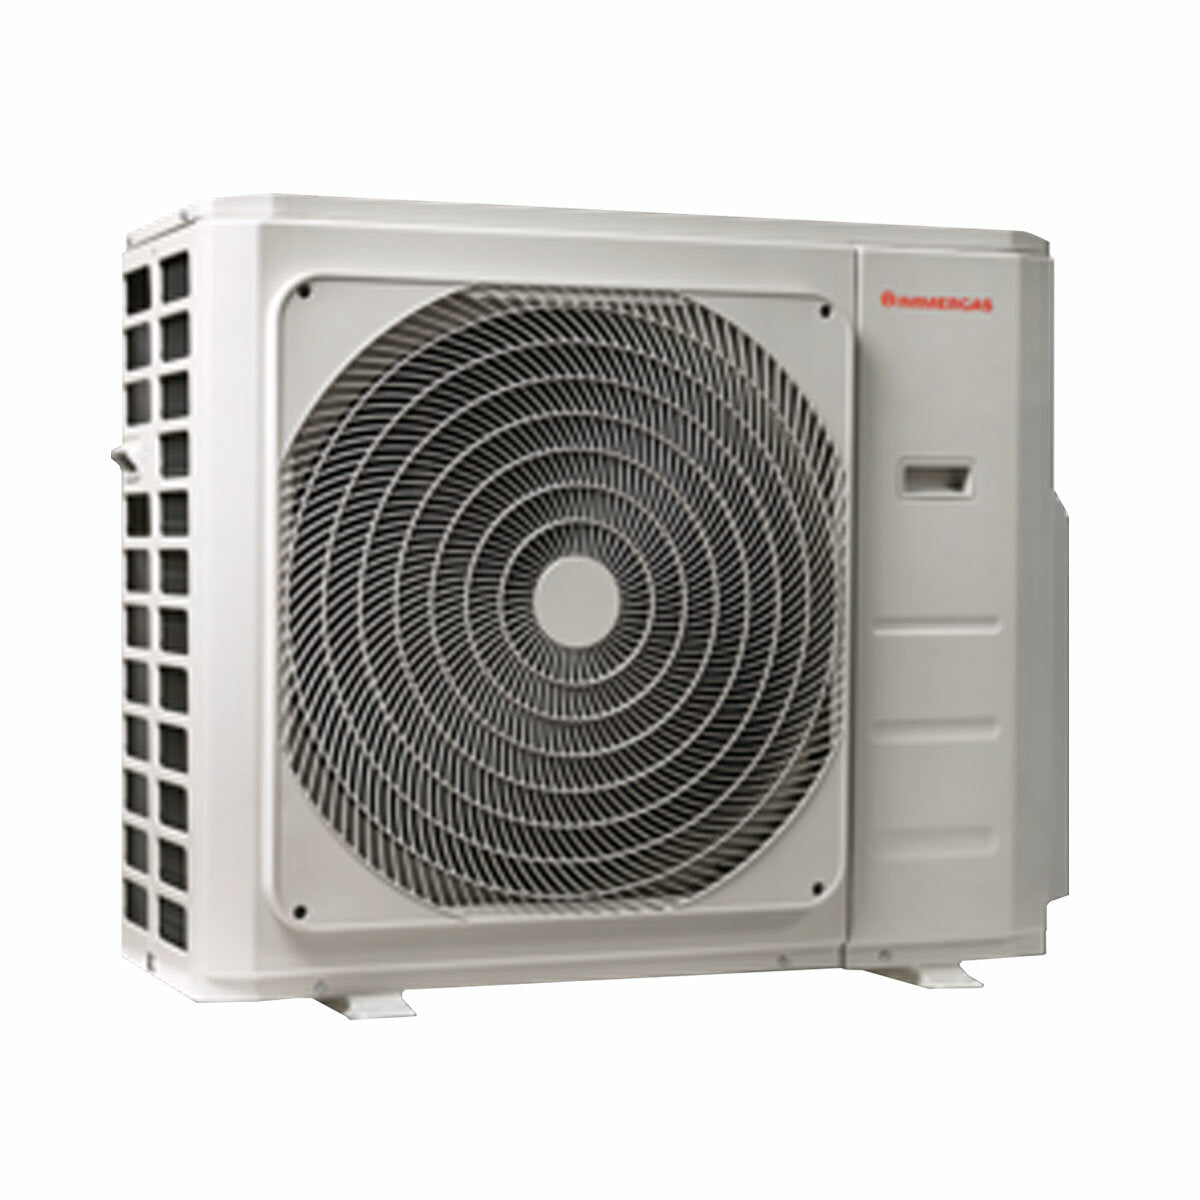 Immergas THOR Trial-Split-Klimaanlage 12000+12000+12000 BTU Inverter A++ Außeneinheit 7,9 kW 